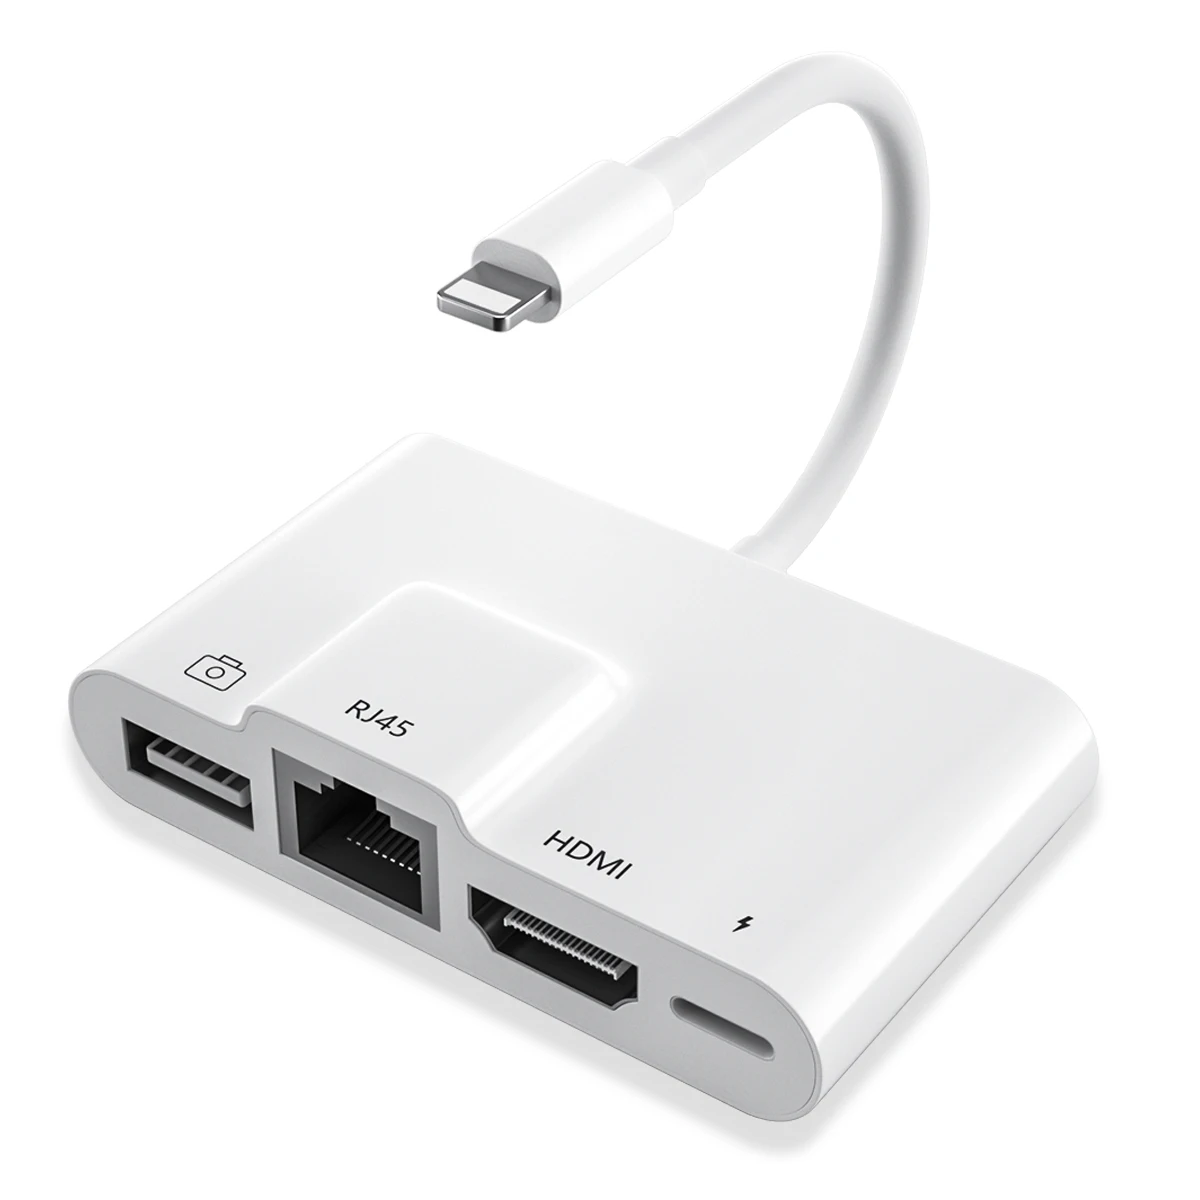 

Digital AV Rj45 Ethernet USB 3.0 OTG Hub Adapter light ning to USB 3 Camera Card Reader Adapter for iPhone